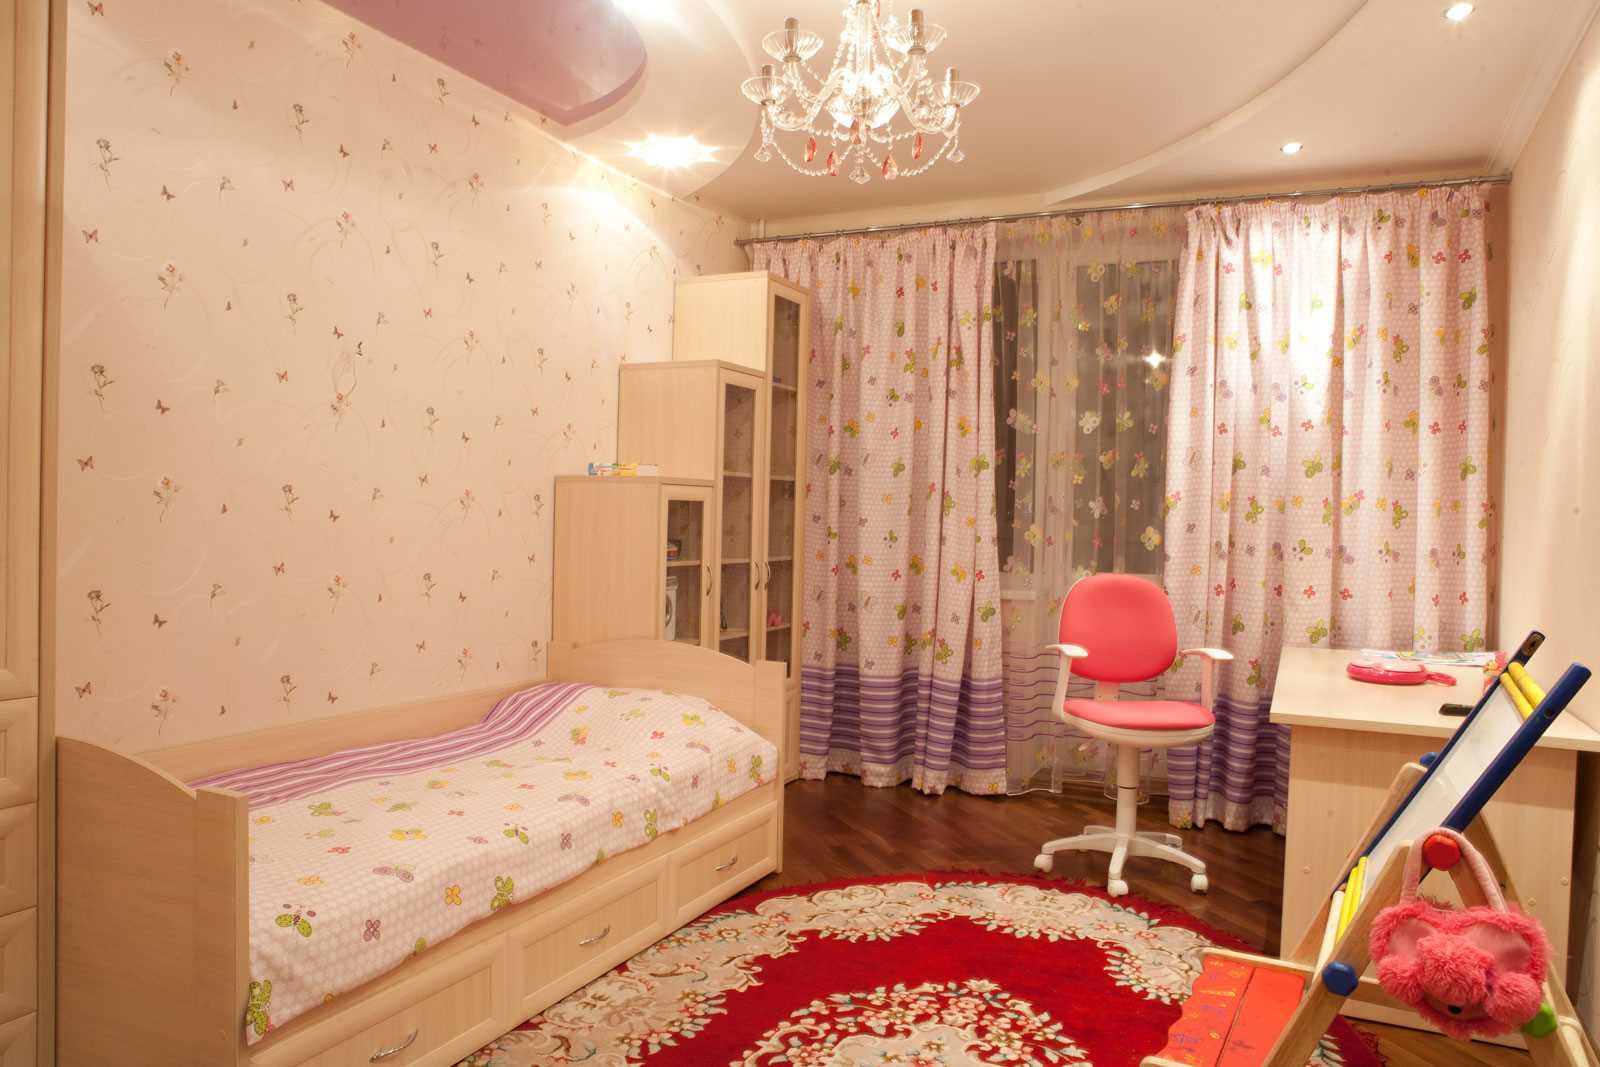 myšlenka jasného designu dětského pokoje pro dívku o velikosti 12 m2